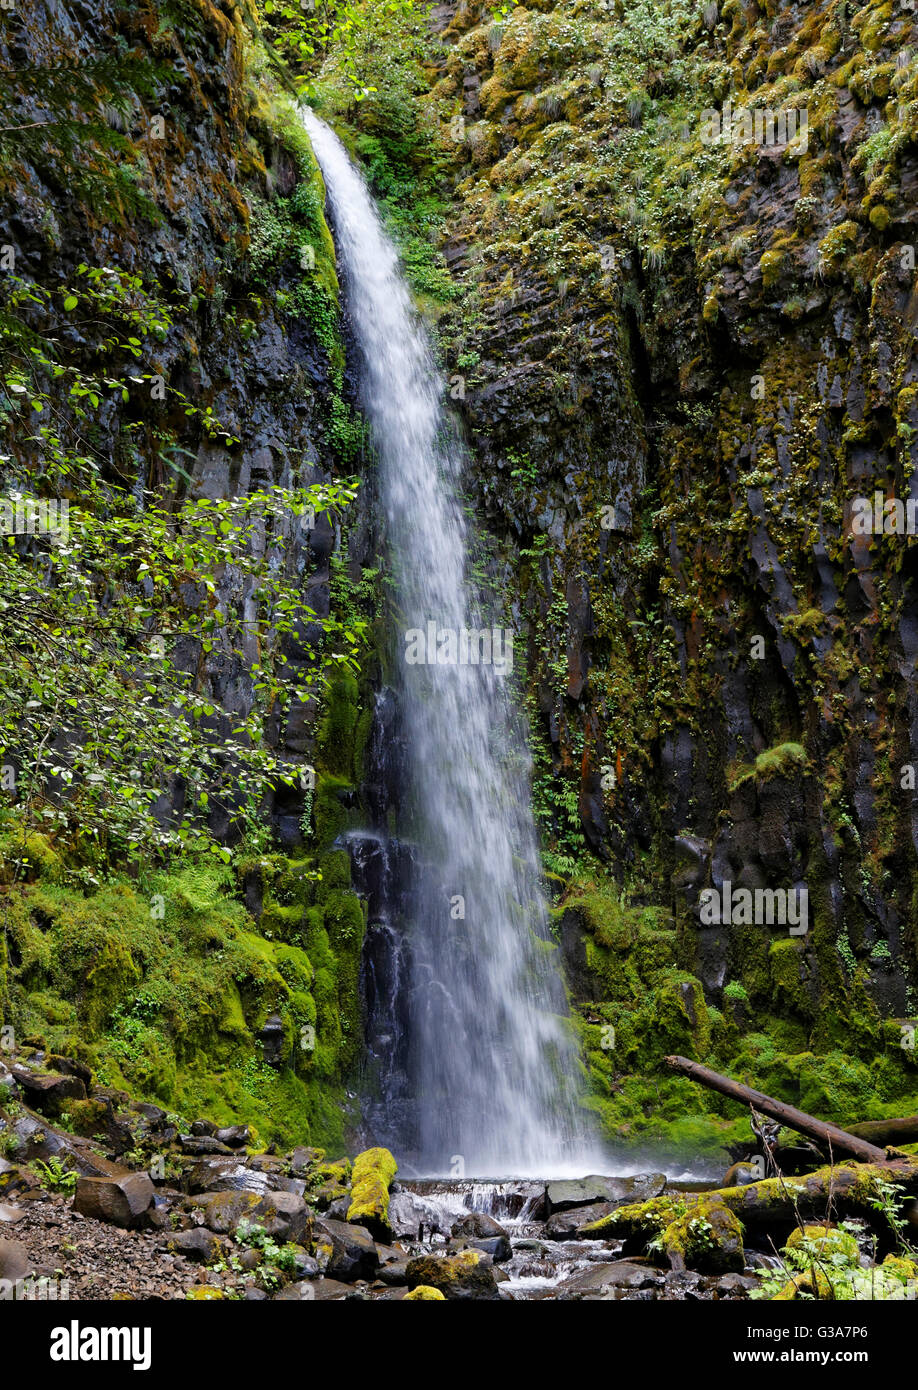 30 30 42 138,08946 pied grand cascade cascade sur une falaise de basalte couverts de mousse dans un bassin d'eau ci-dessous Banque D'Images